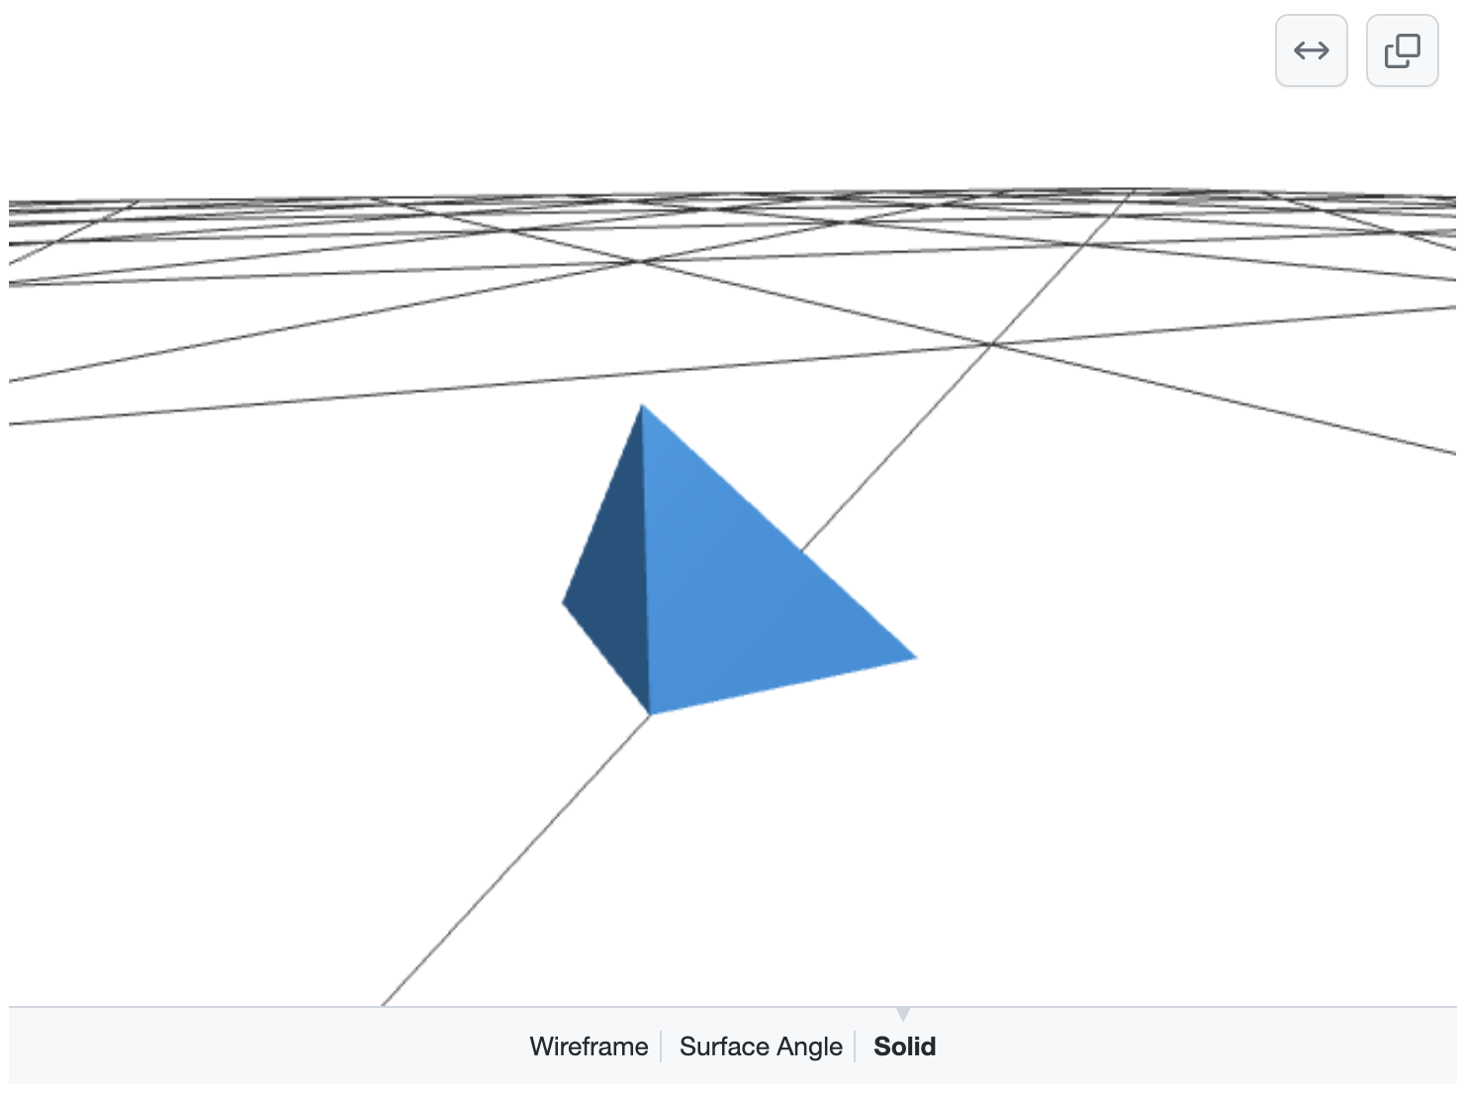 Captura de pantalla de un modelo en 3D de una pirámide azul sobre una cuadrícula de líneas negras en un suelo blanco. Las opciones para seleccionar "Wireframe" (Retícula), "Surface Angle" (Ángulo de superficie) o "Solid" (Sólido) aparecen en la parte inferior.